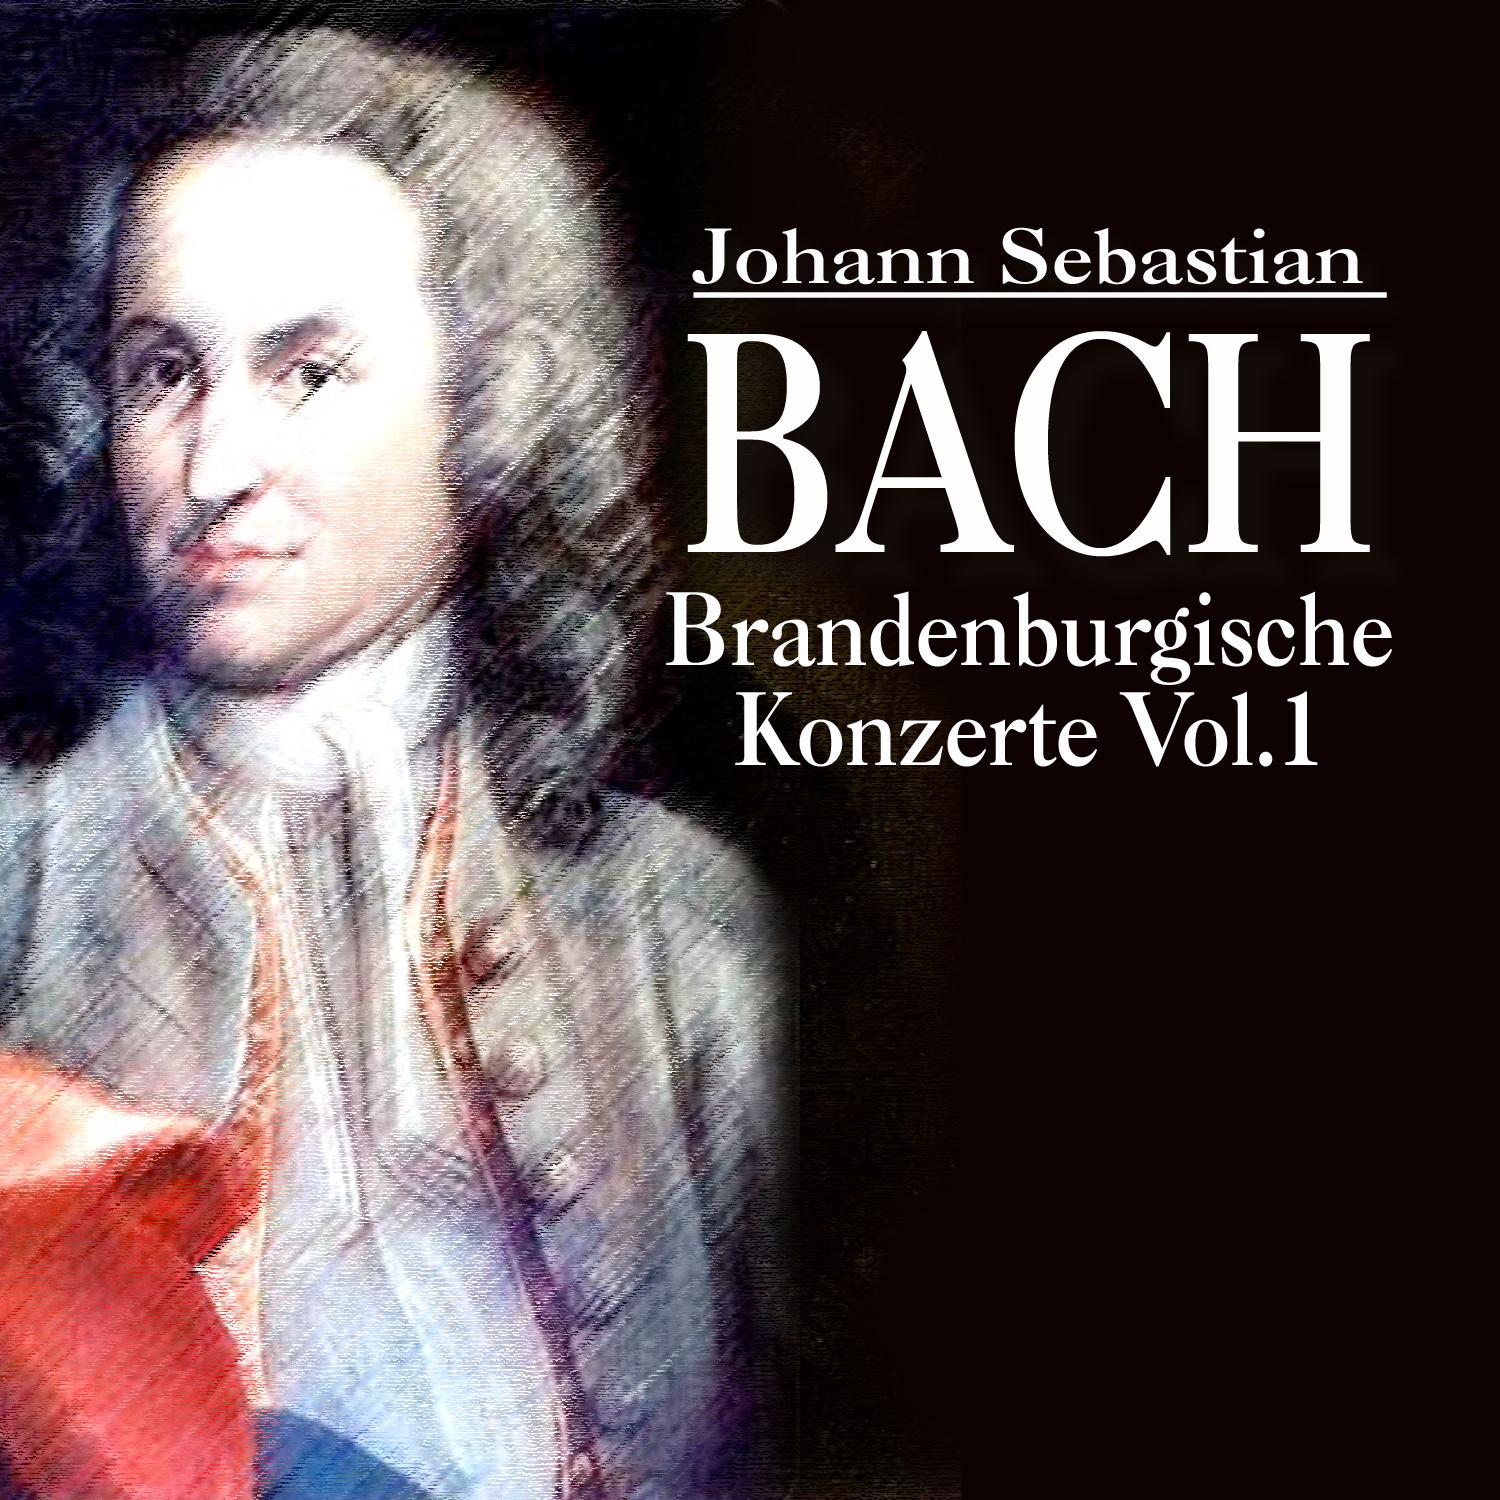 Brandenburgisches Konzert Nr. 2 F-Dur BWV 1047 (1.Allegro)